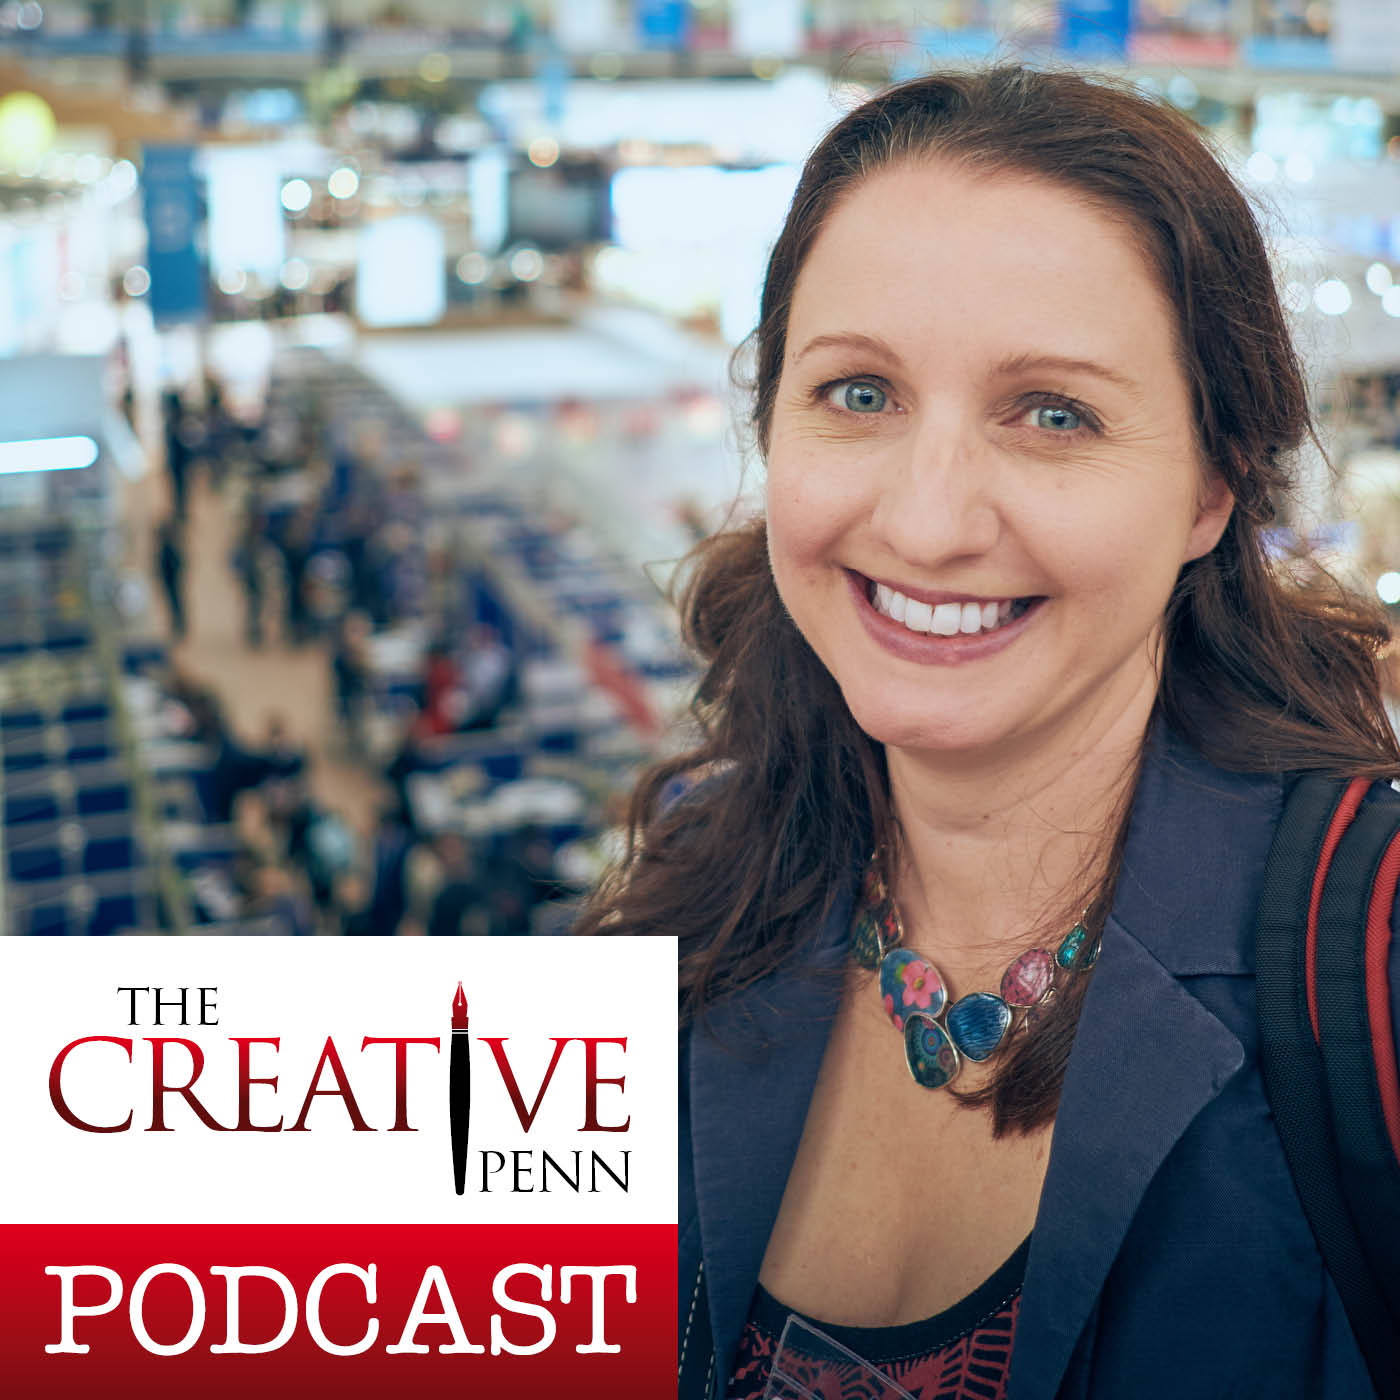 The Creative Penn Podcast